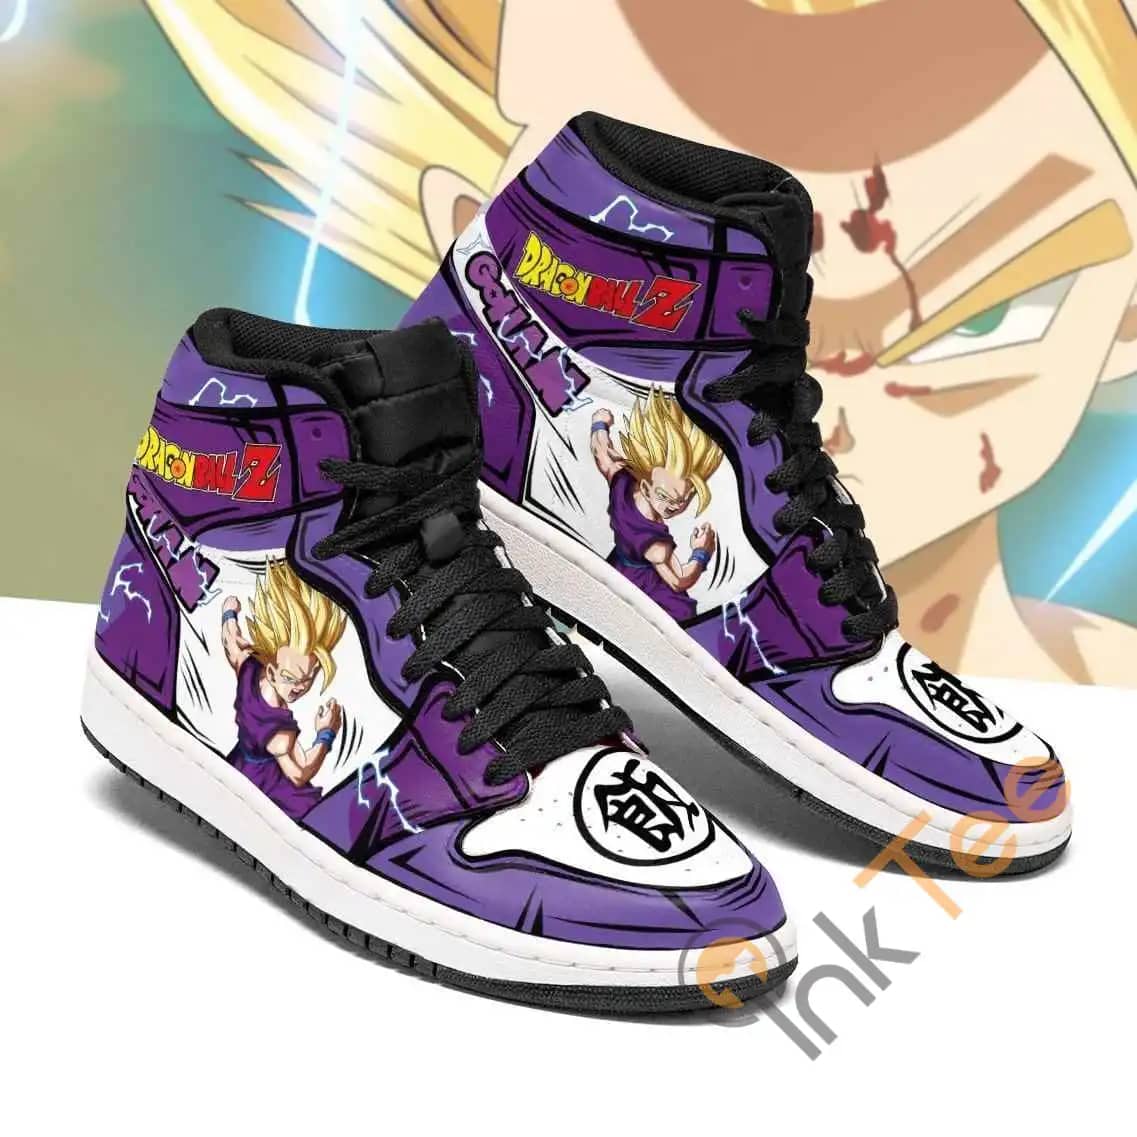 Gohan Dragon Ball Z Anime Sneakers Air Jordan Shoes